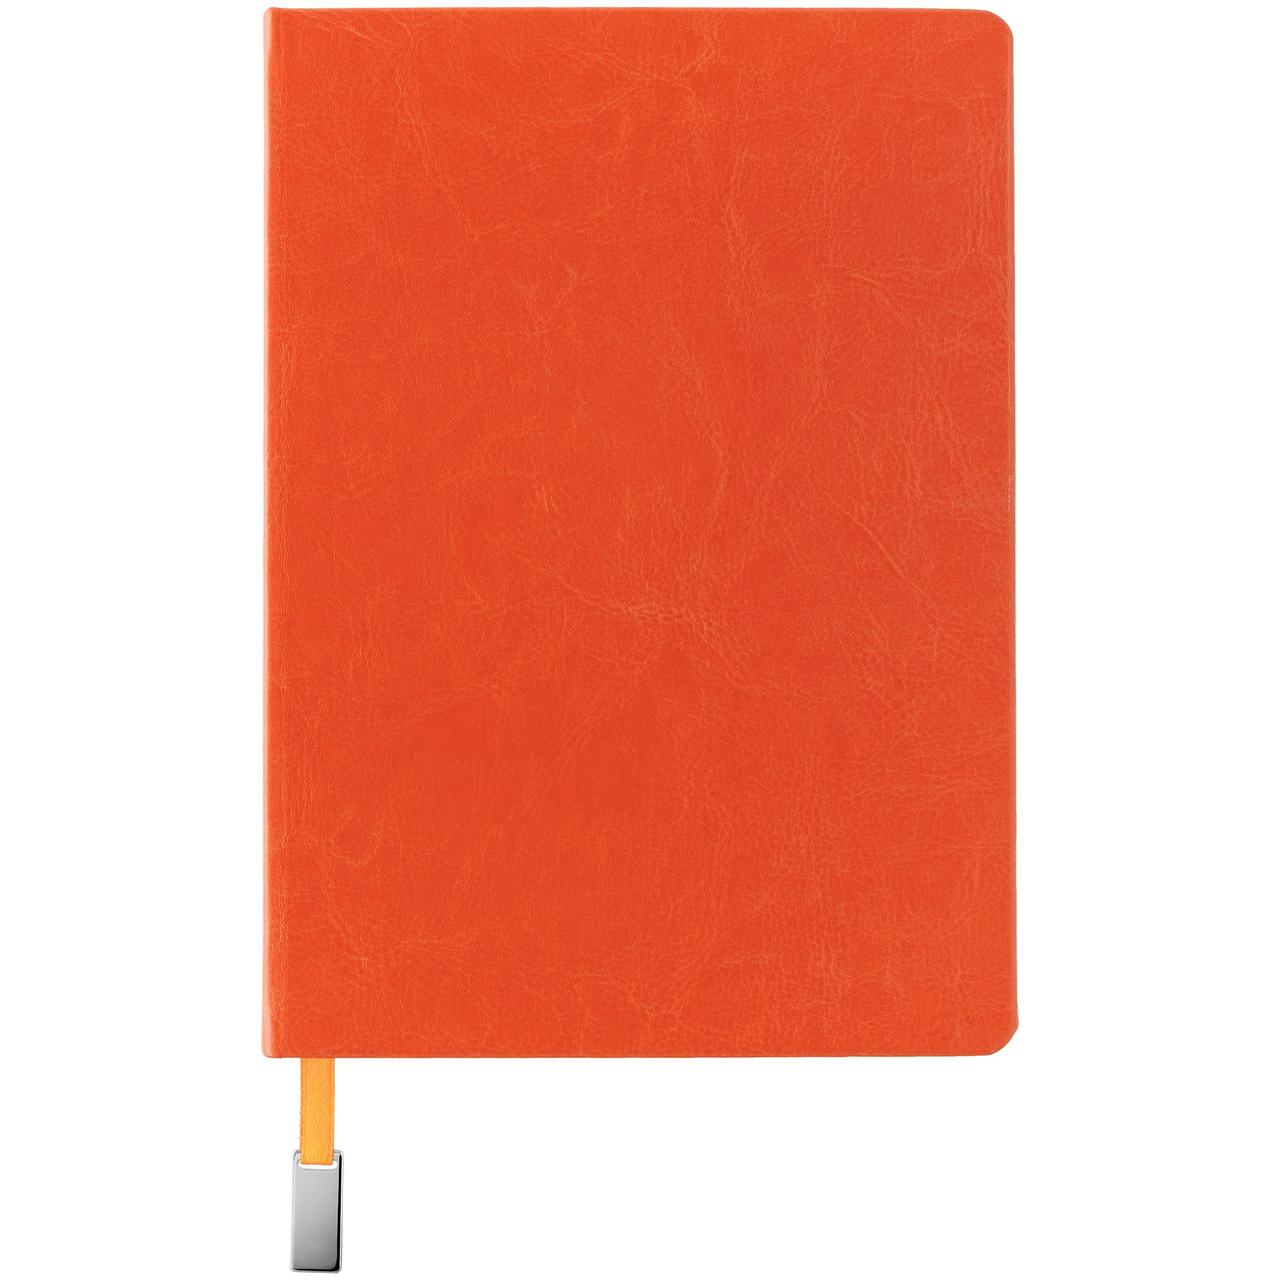 Ежедневник Ever, недатированный, оранжевый (артикул 7878.20), фото 1